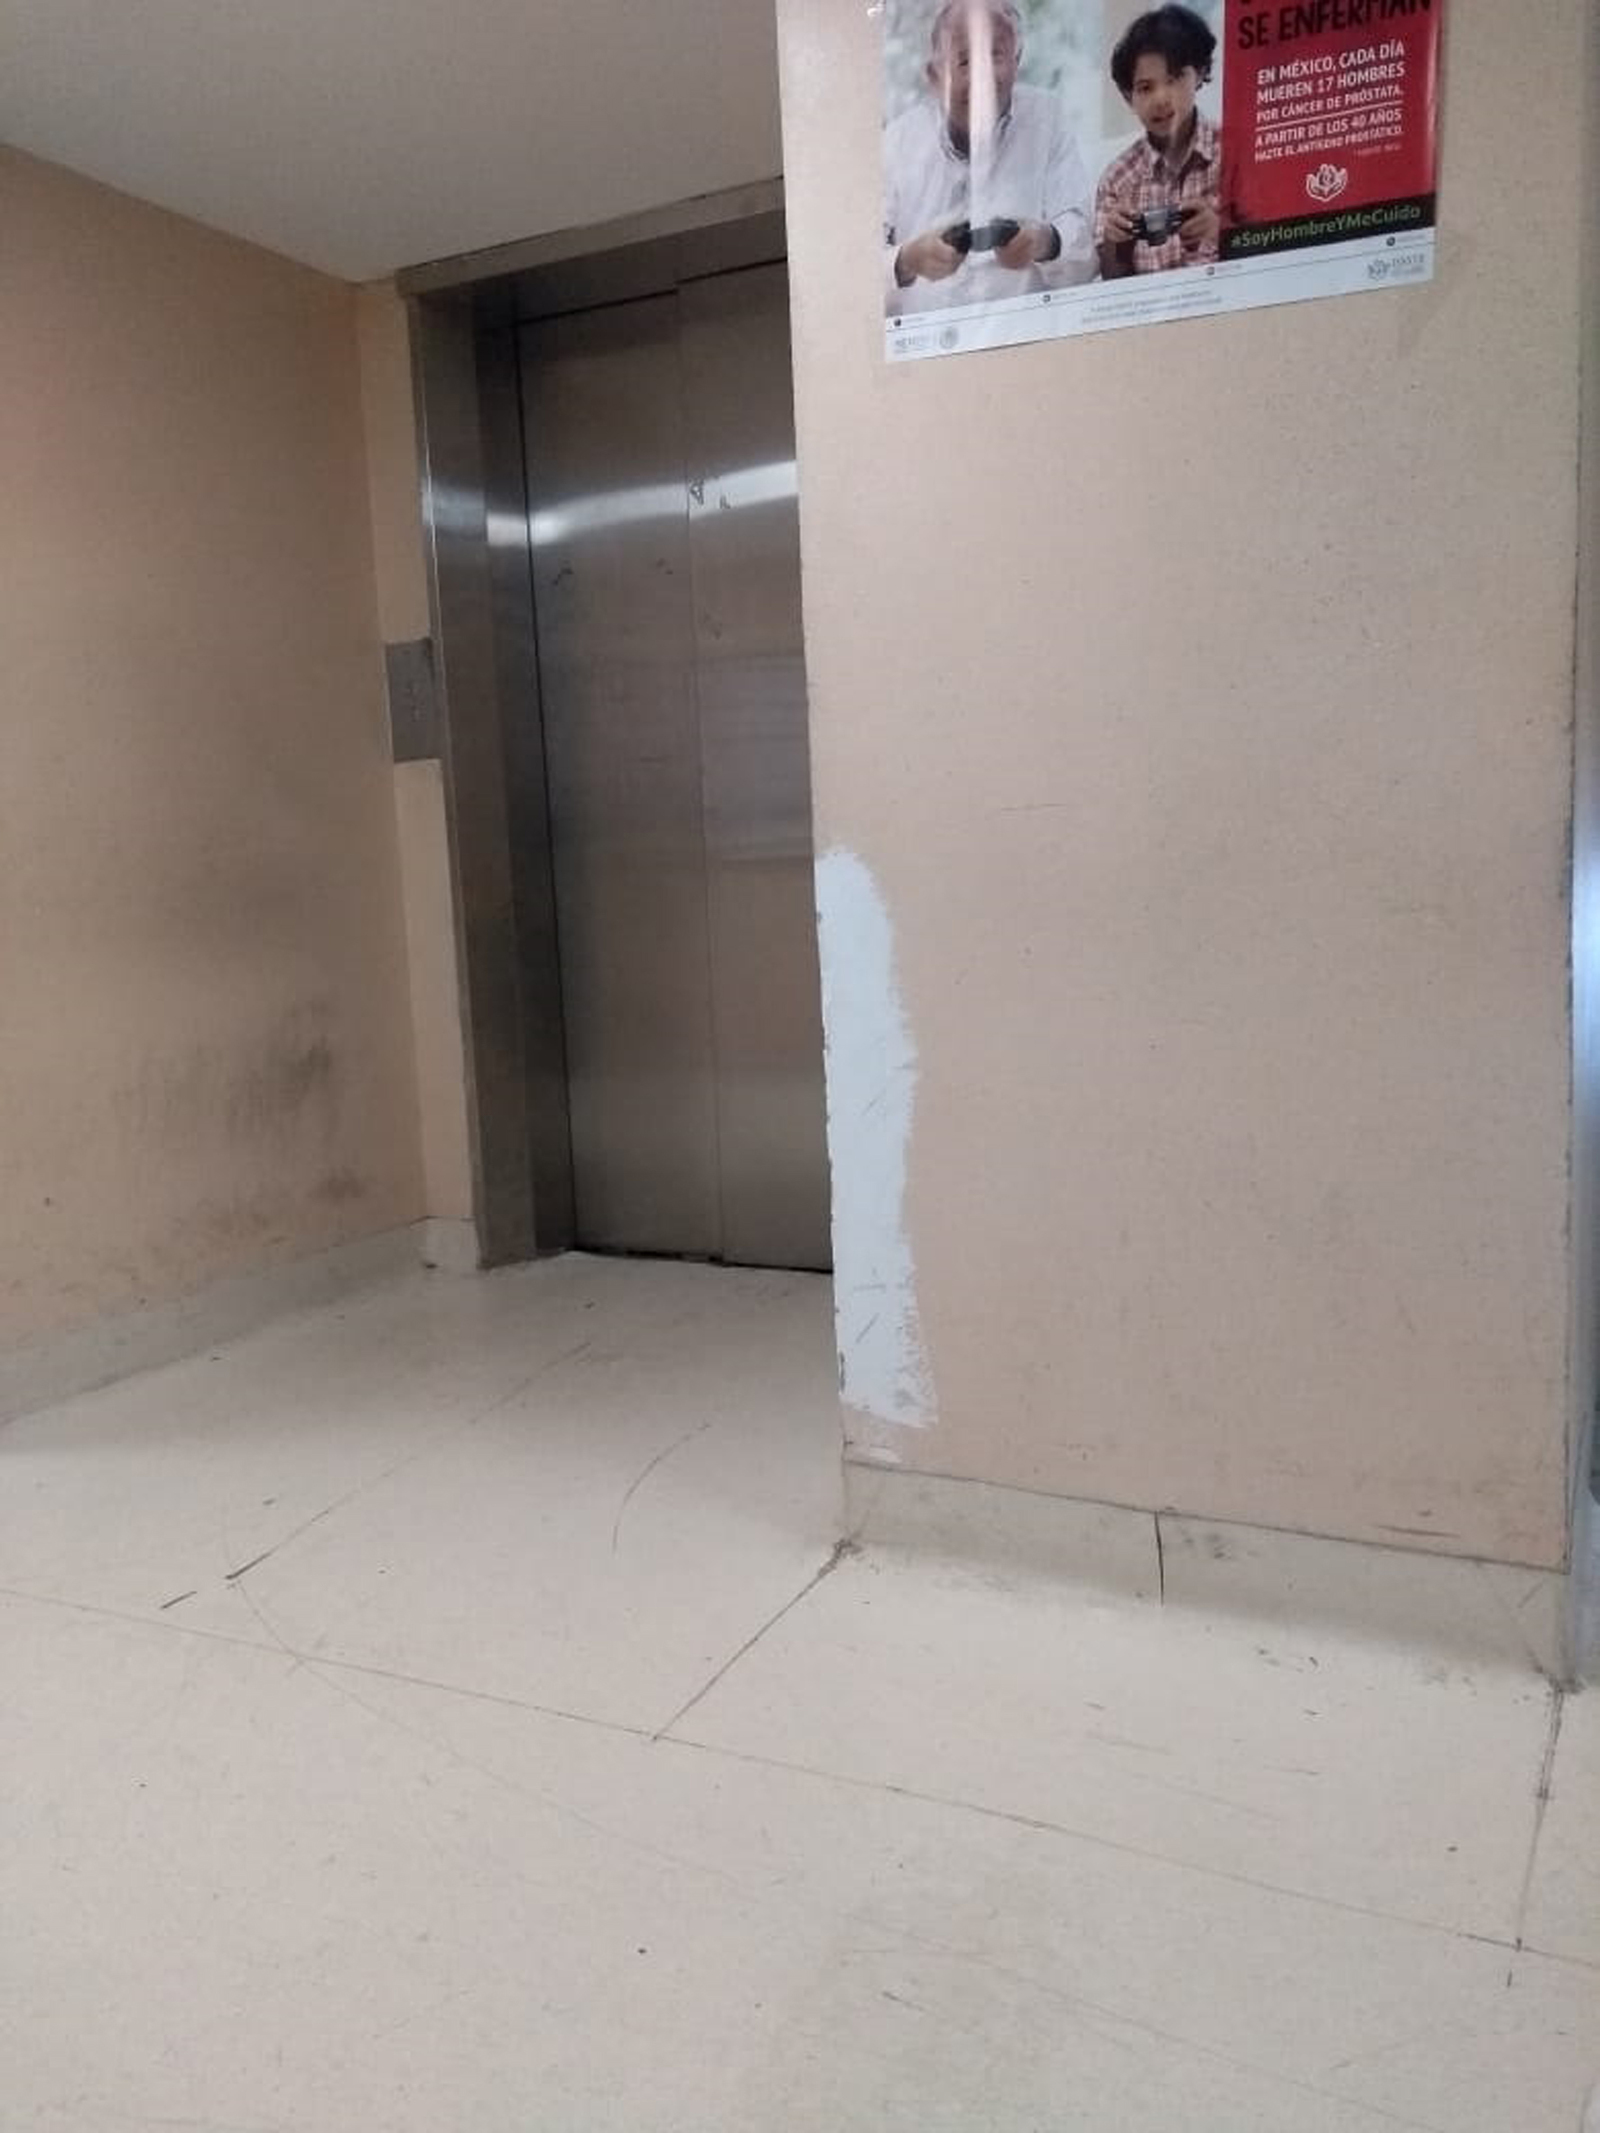 Ante la descompostura del elevador tipo montacargas, el personal del ISSSTE tiene que trasladar los alimentos por el ascensor que generalmente utiliza la derechohabiencia.